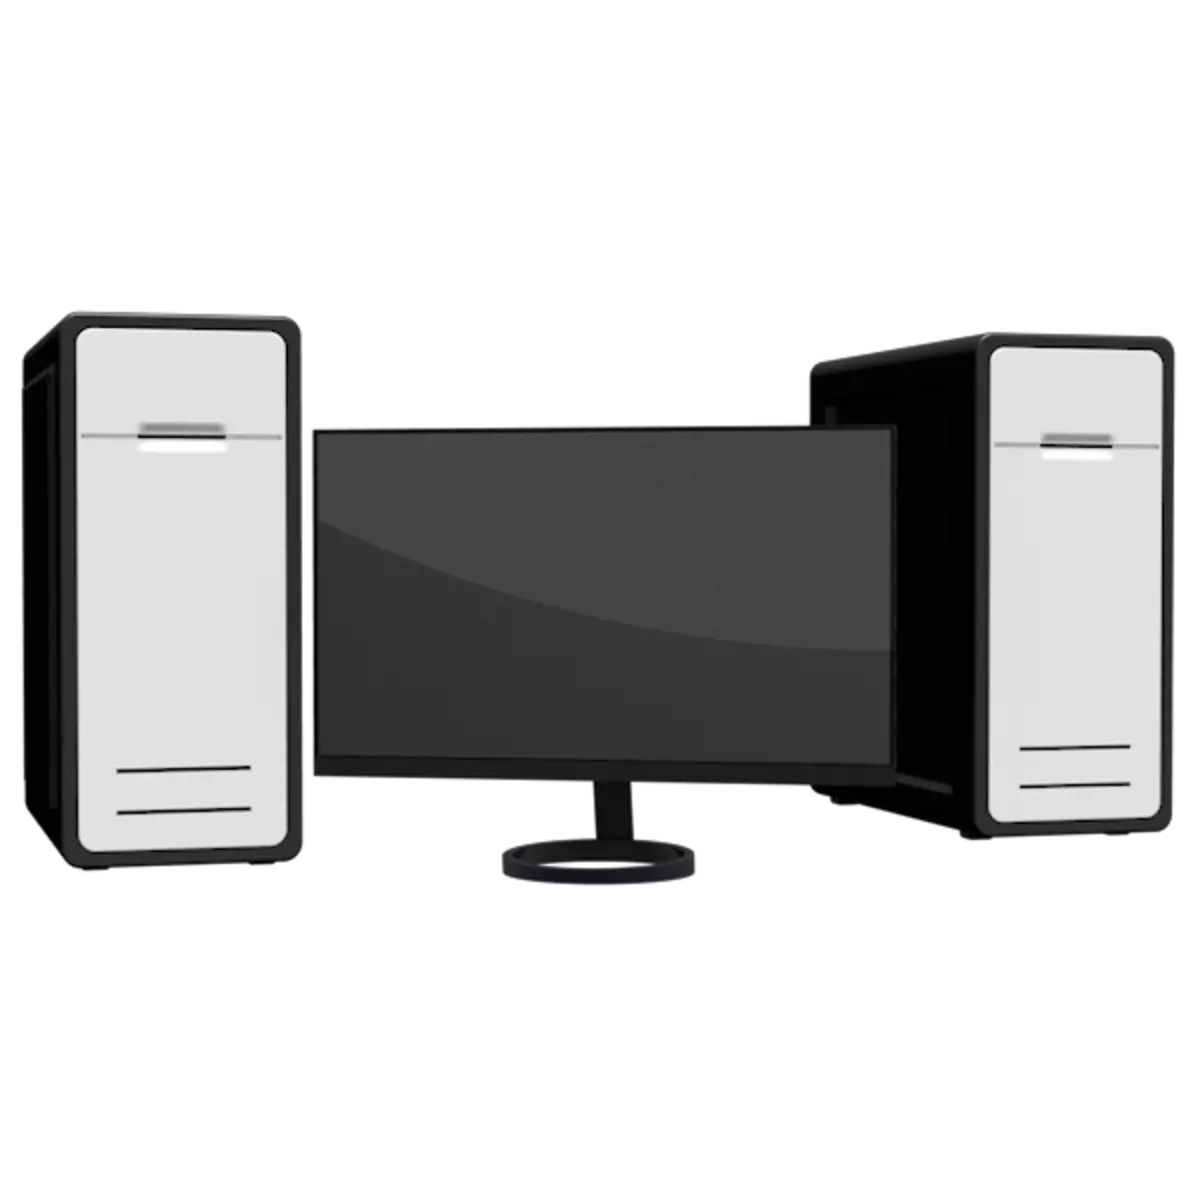 Cách kết nối một màn hình với hai máy tính